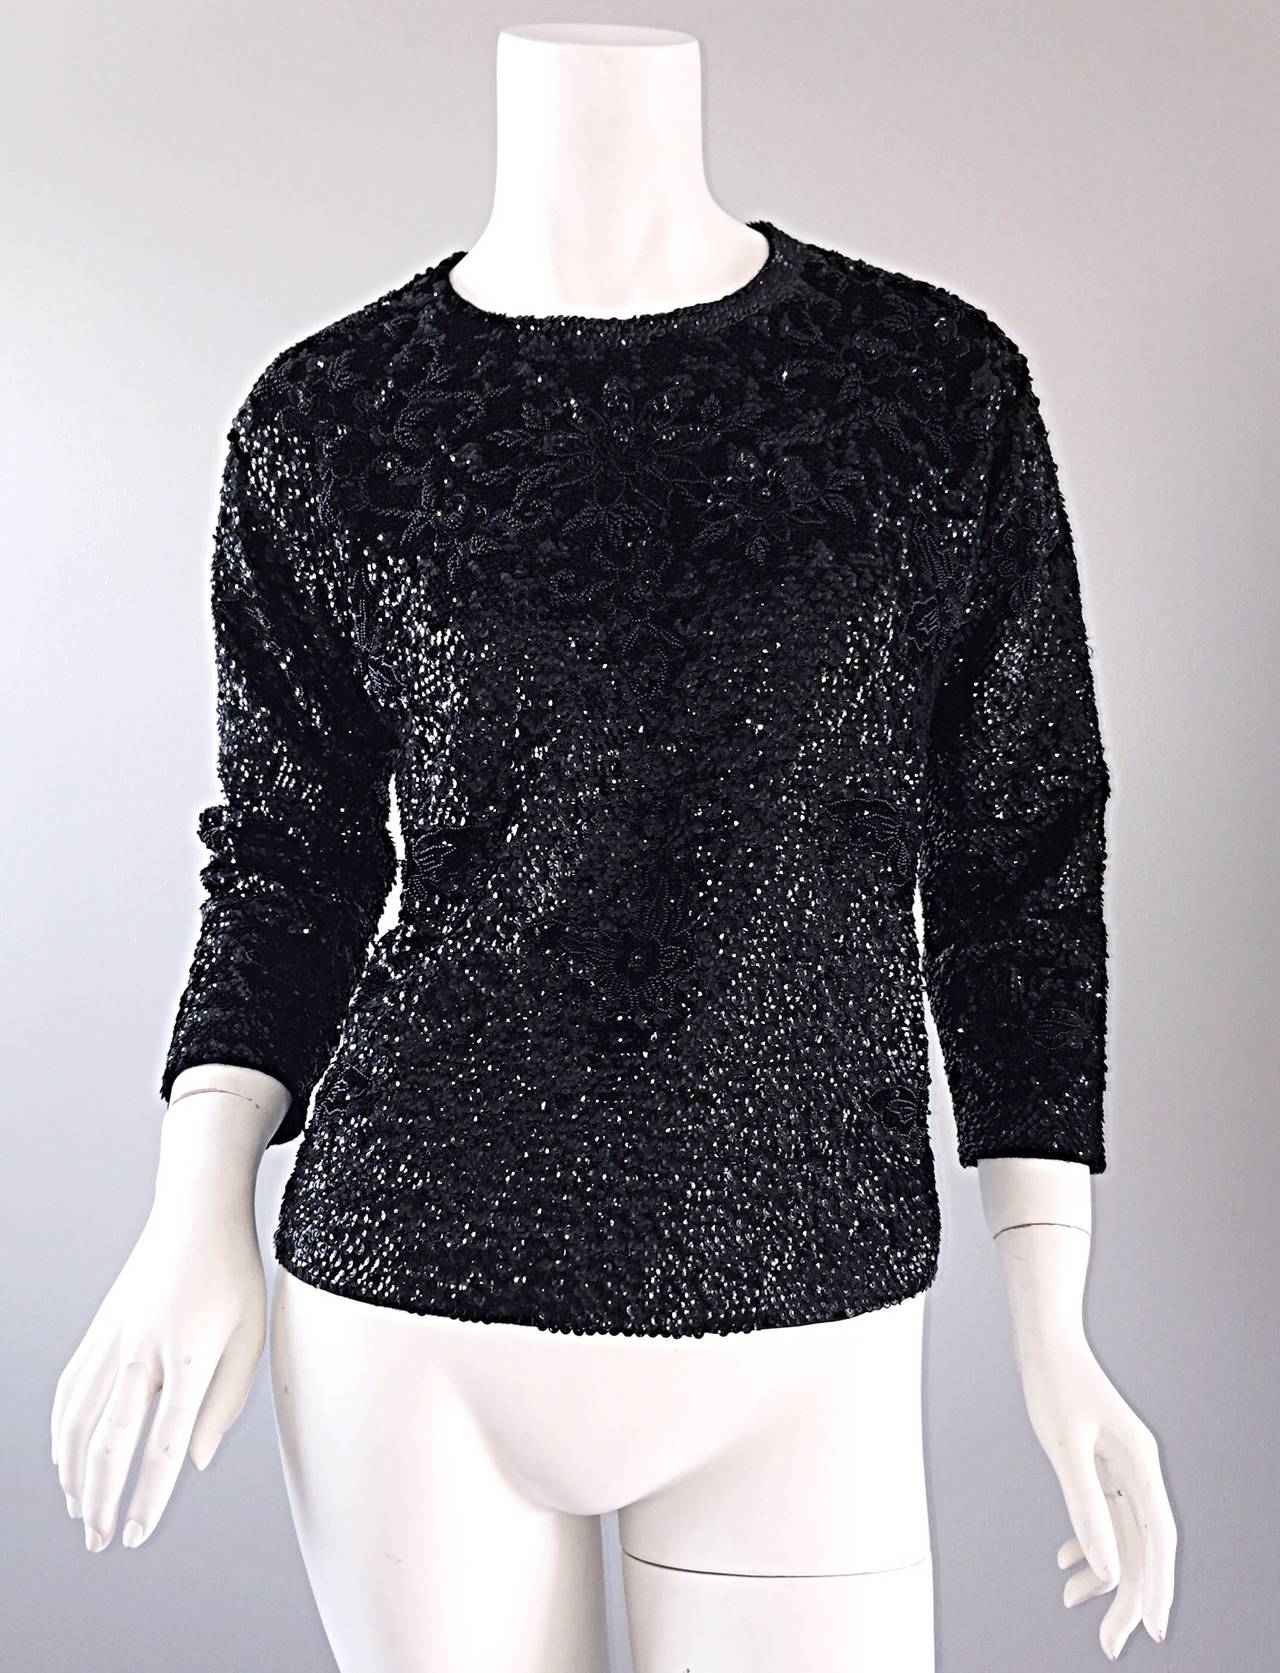 Schöner schwarzer Wollpullover aus den 1950er Jahren mit Pailletten und Perlen! Die Schönheit dieses Pullovers lässt sich mit Worten nicht einmal ansatzweise beschreiben! Aufwändige Perlenstickerei mit floralem Muster im Brustbereich. Durchgehender